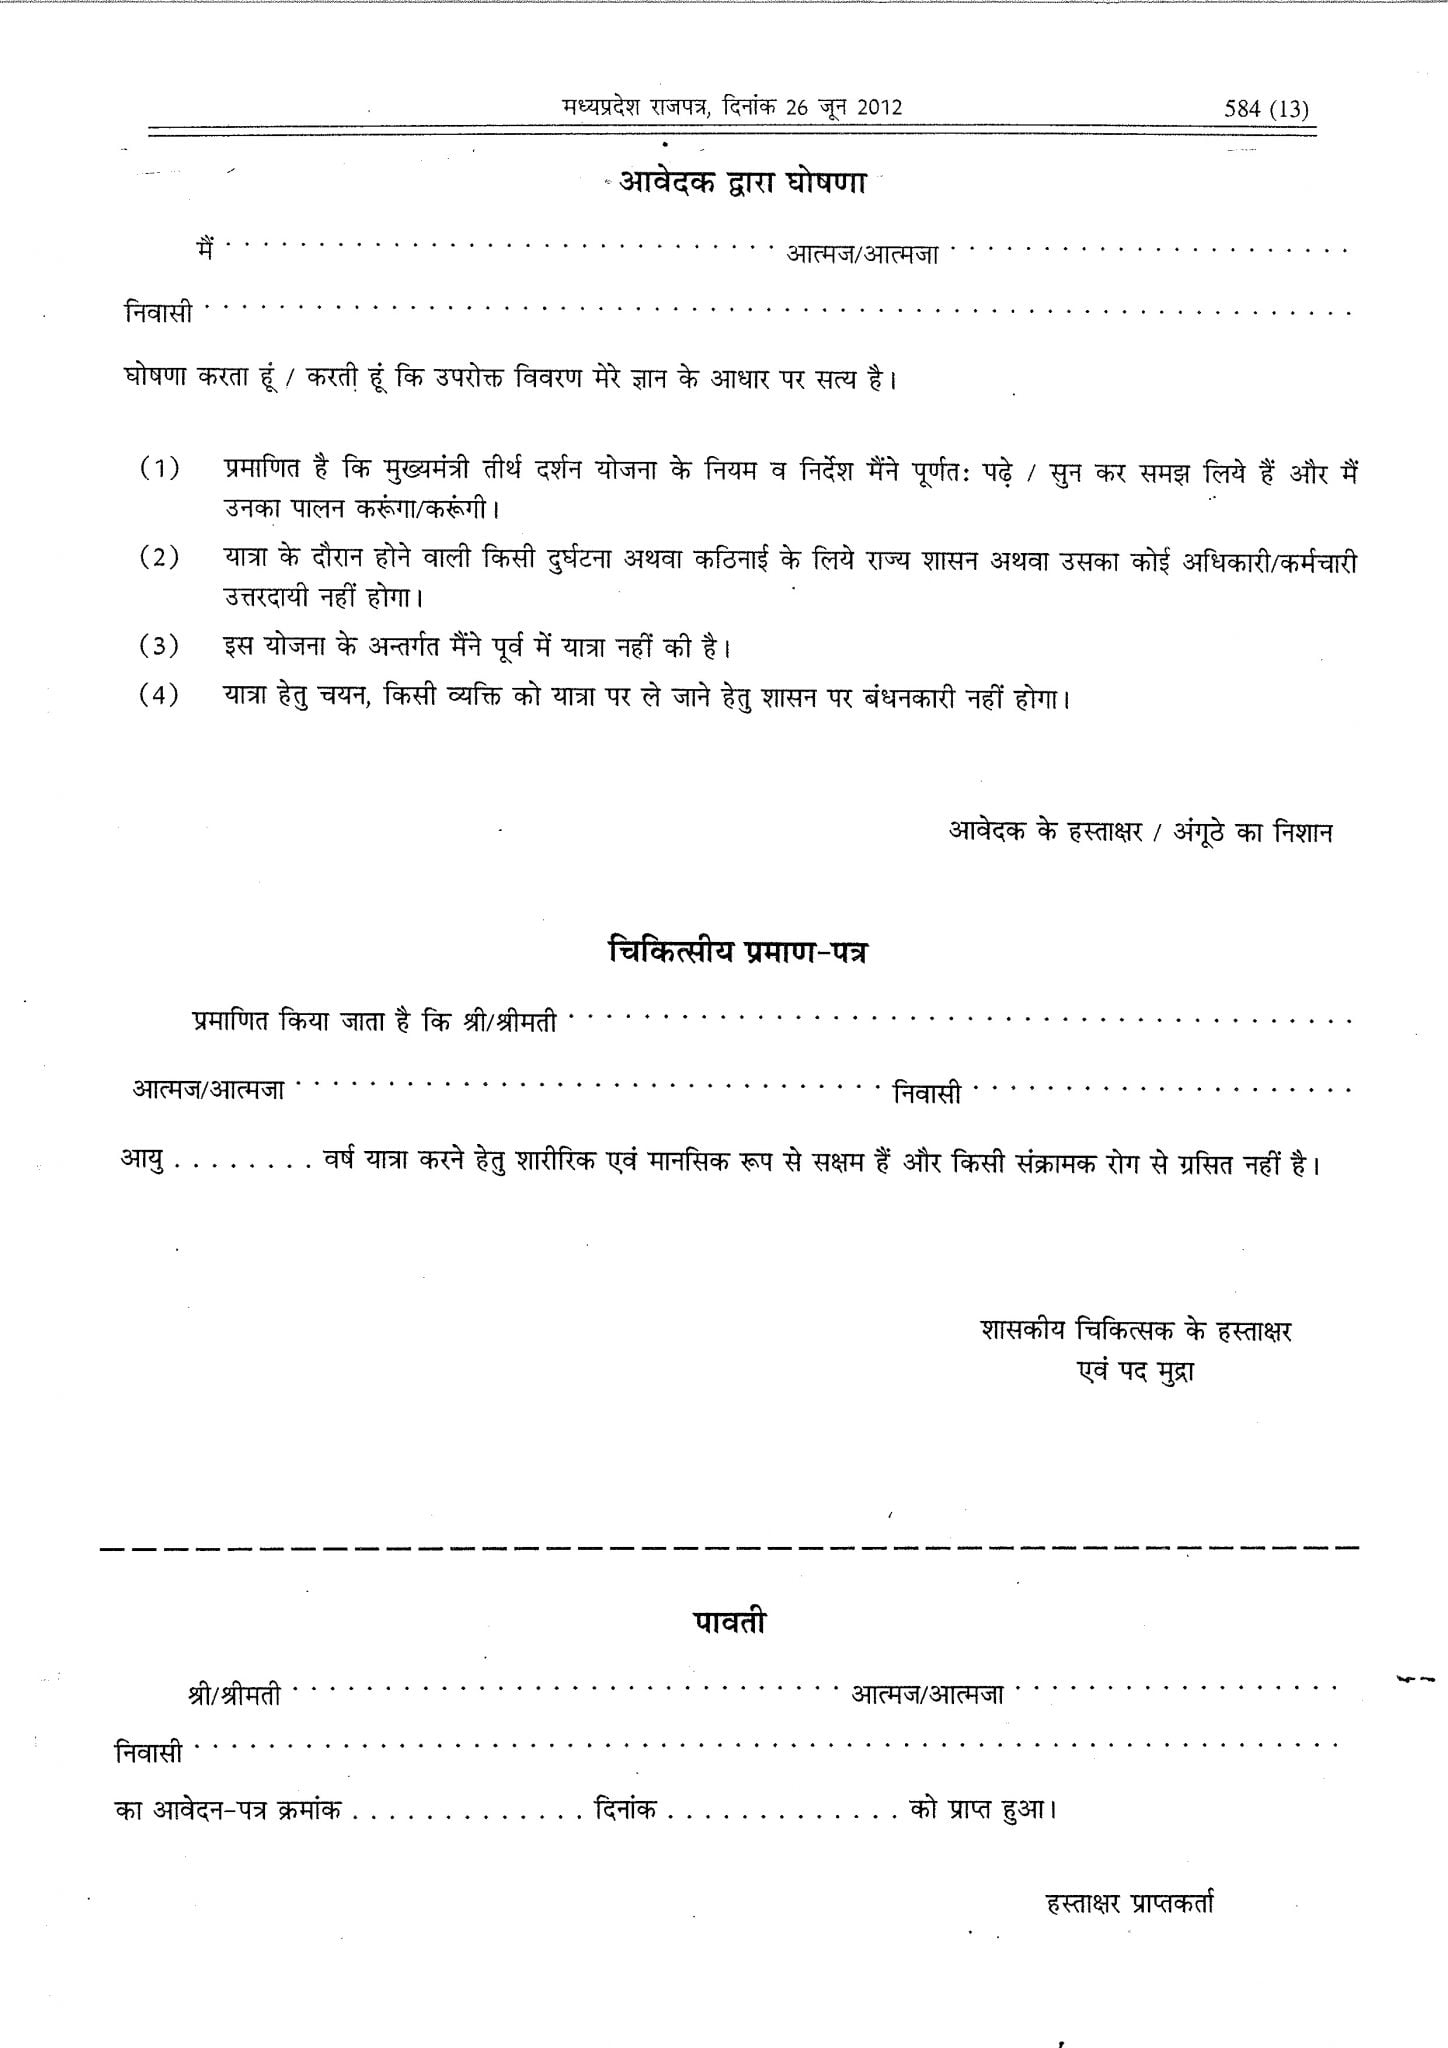 MP Mukhyamantri Teerth Darshan Yojana Application Form